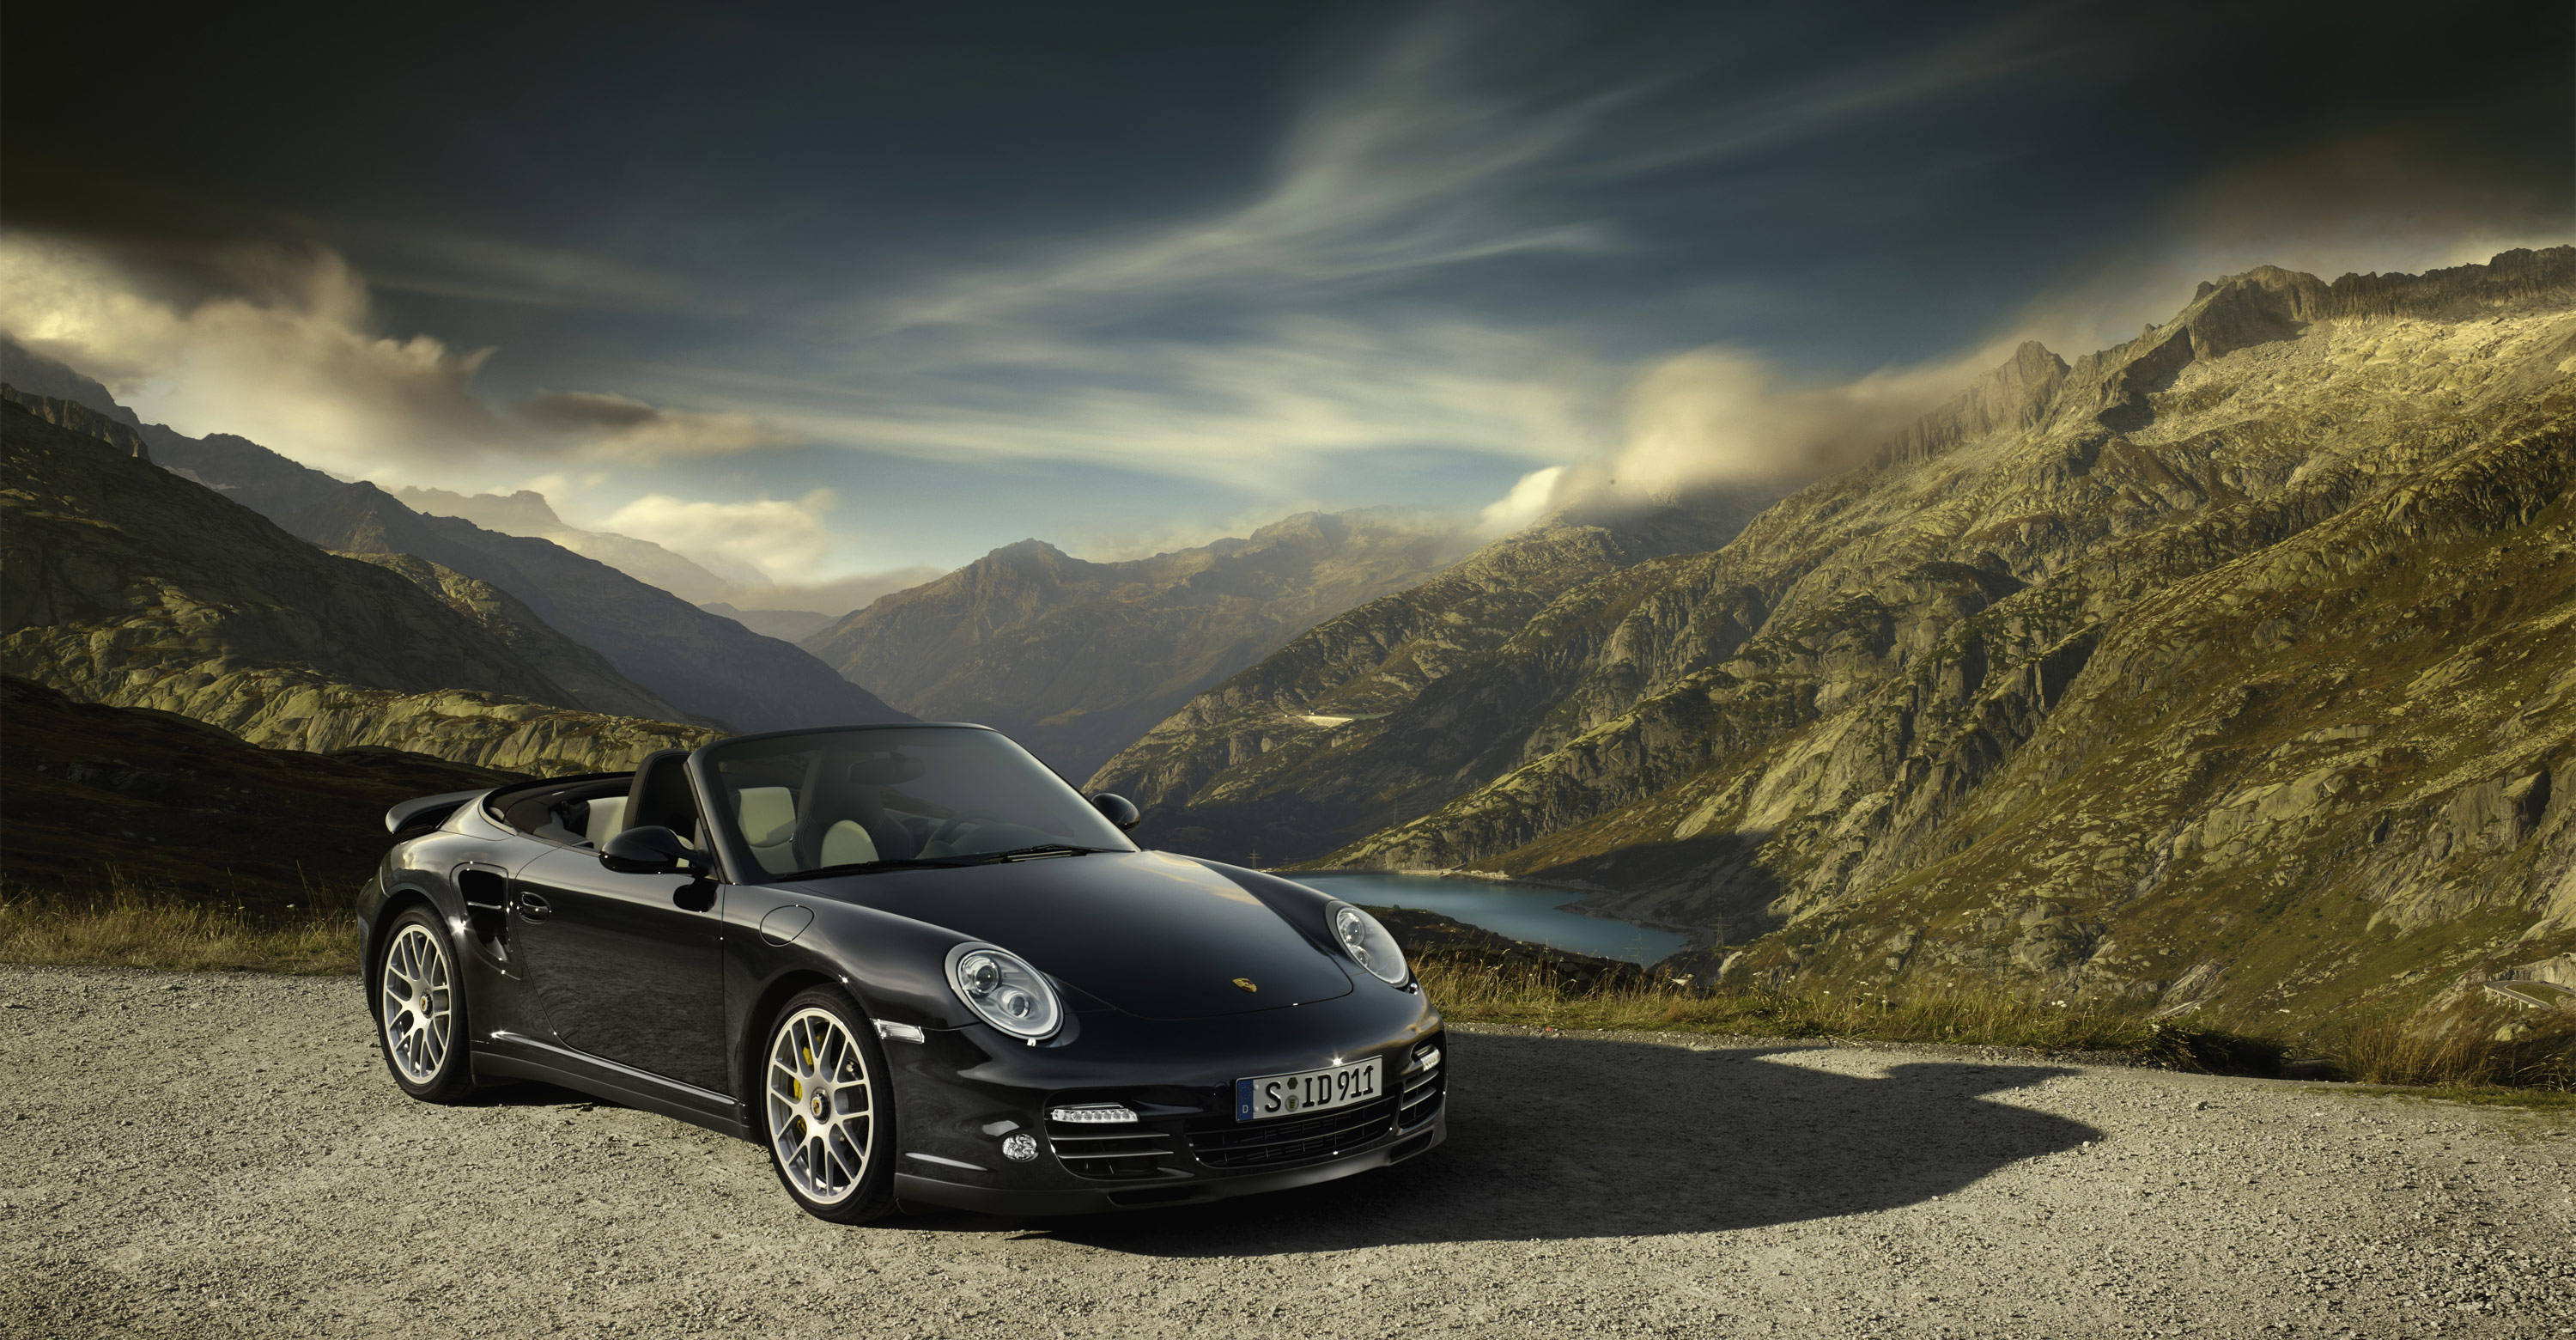 Khám phá sự lịch lãm và tinh tế của Porsche 911 2011 qua hình nền đẹp mắt này. Thiết kế nổi bật và đầy sức hút sẽ khiến bạn ngất ngây, thỏa mãn đam mê với những chiếc xe cao cấp từ hãng Porsche.